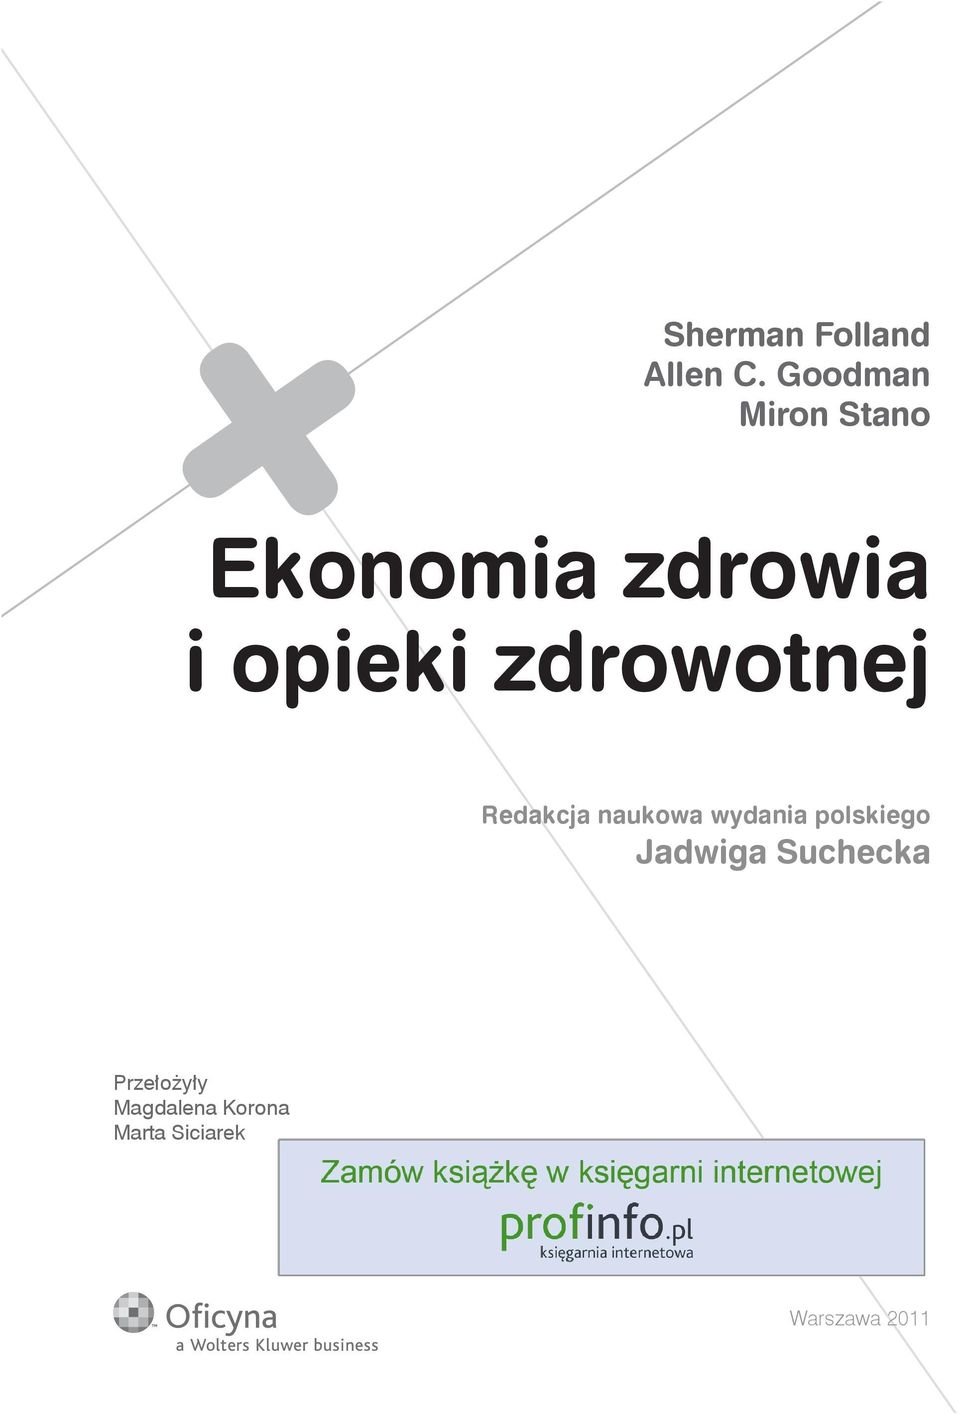 zdrowotnej Redakcja naukowa wydania polskiego